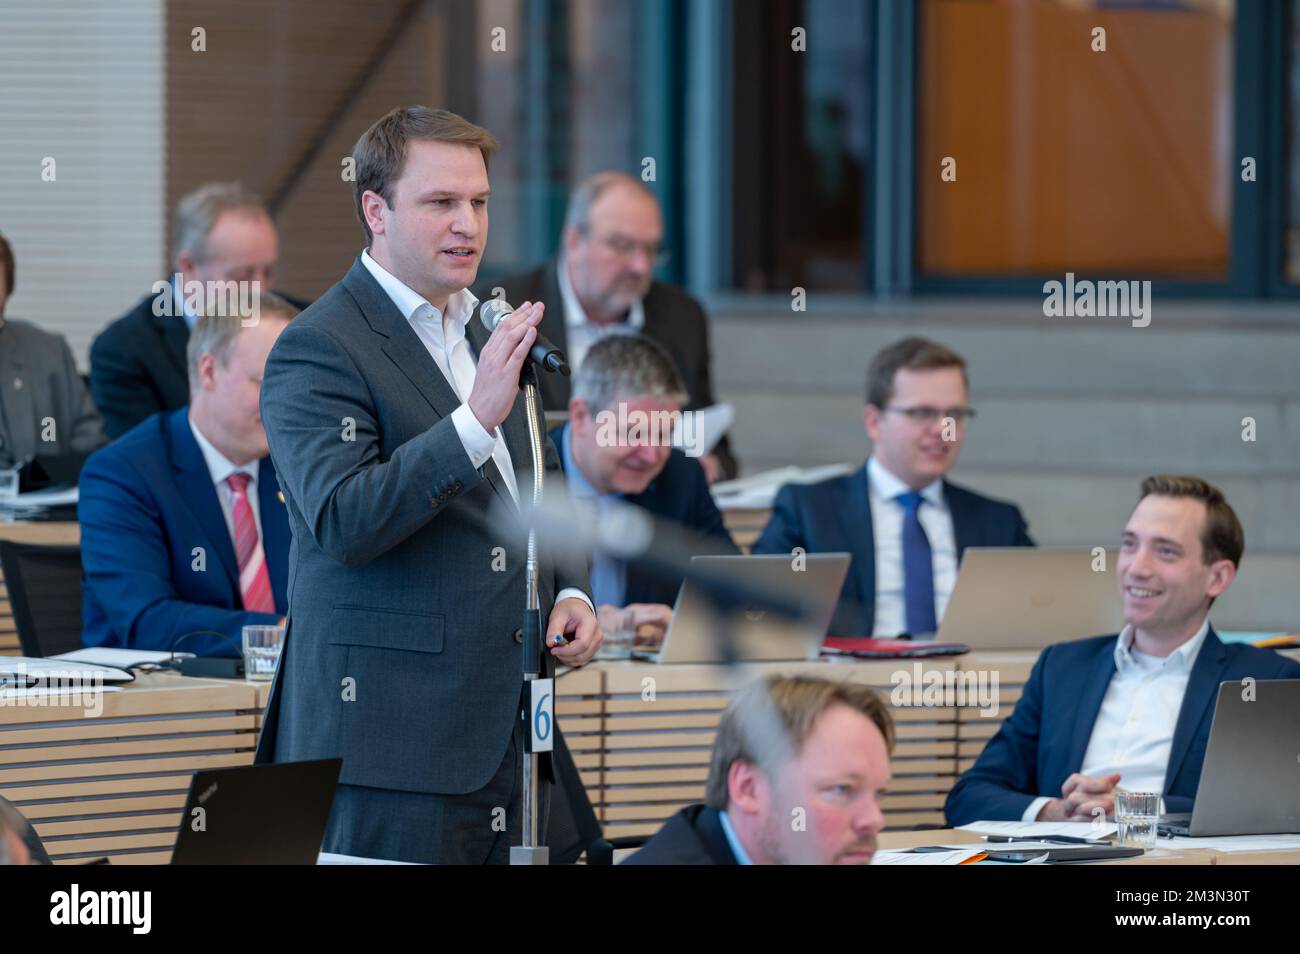 Plenarsitzung im Landeshaus Kiel der Abgeordnete Christopher Vogt bei einer Zwischenfrage Foto Stock